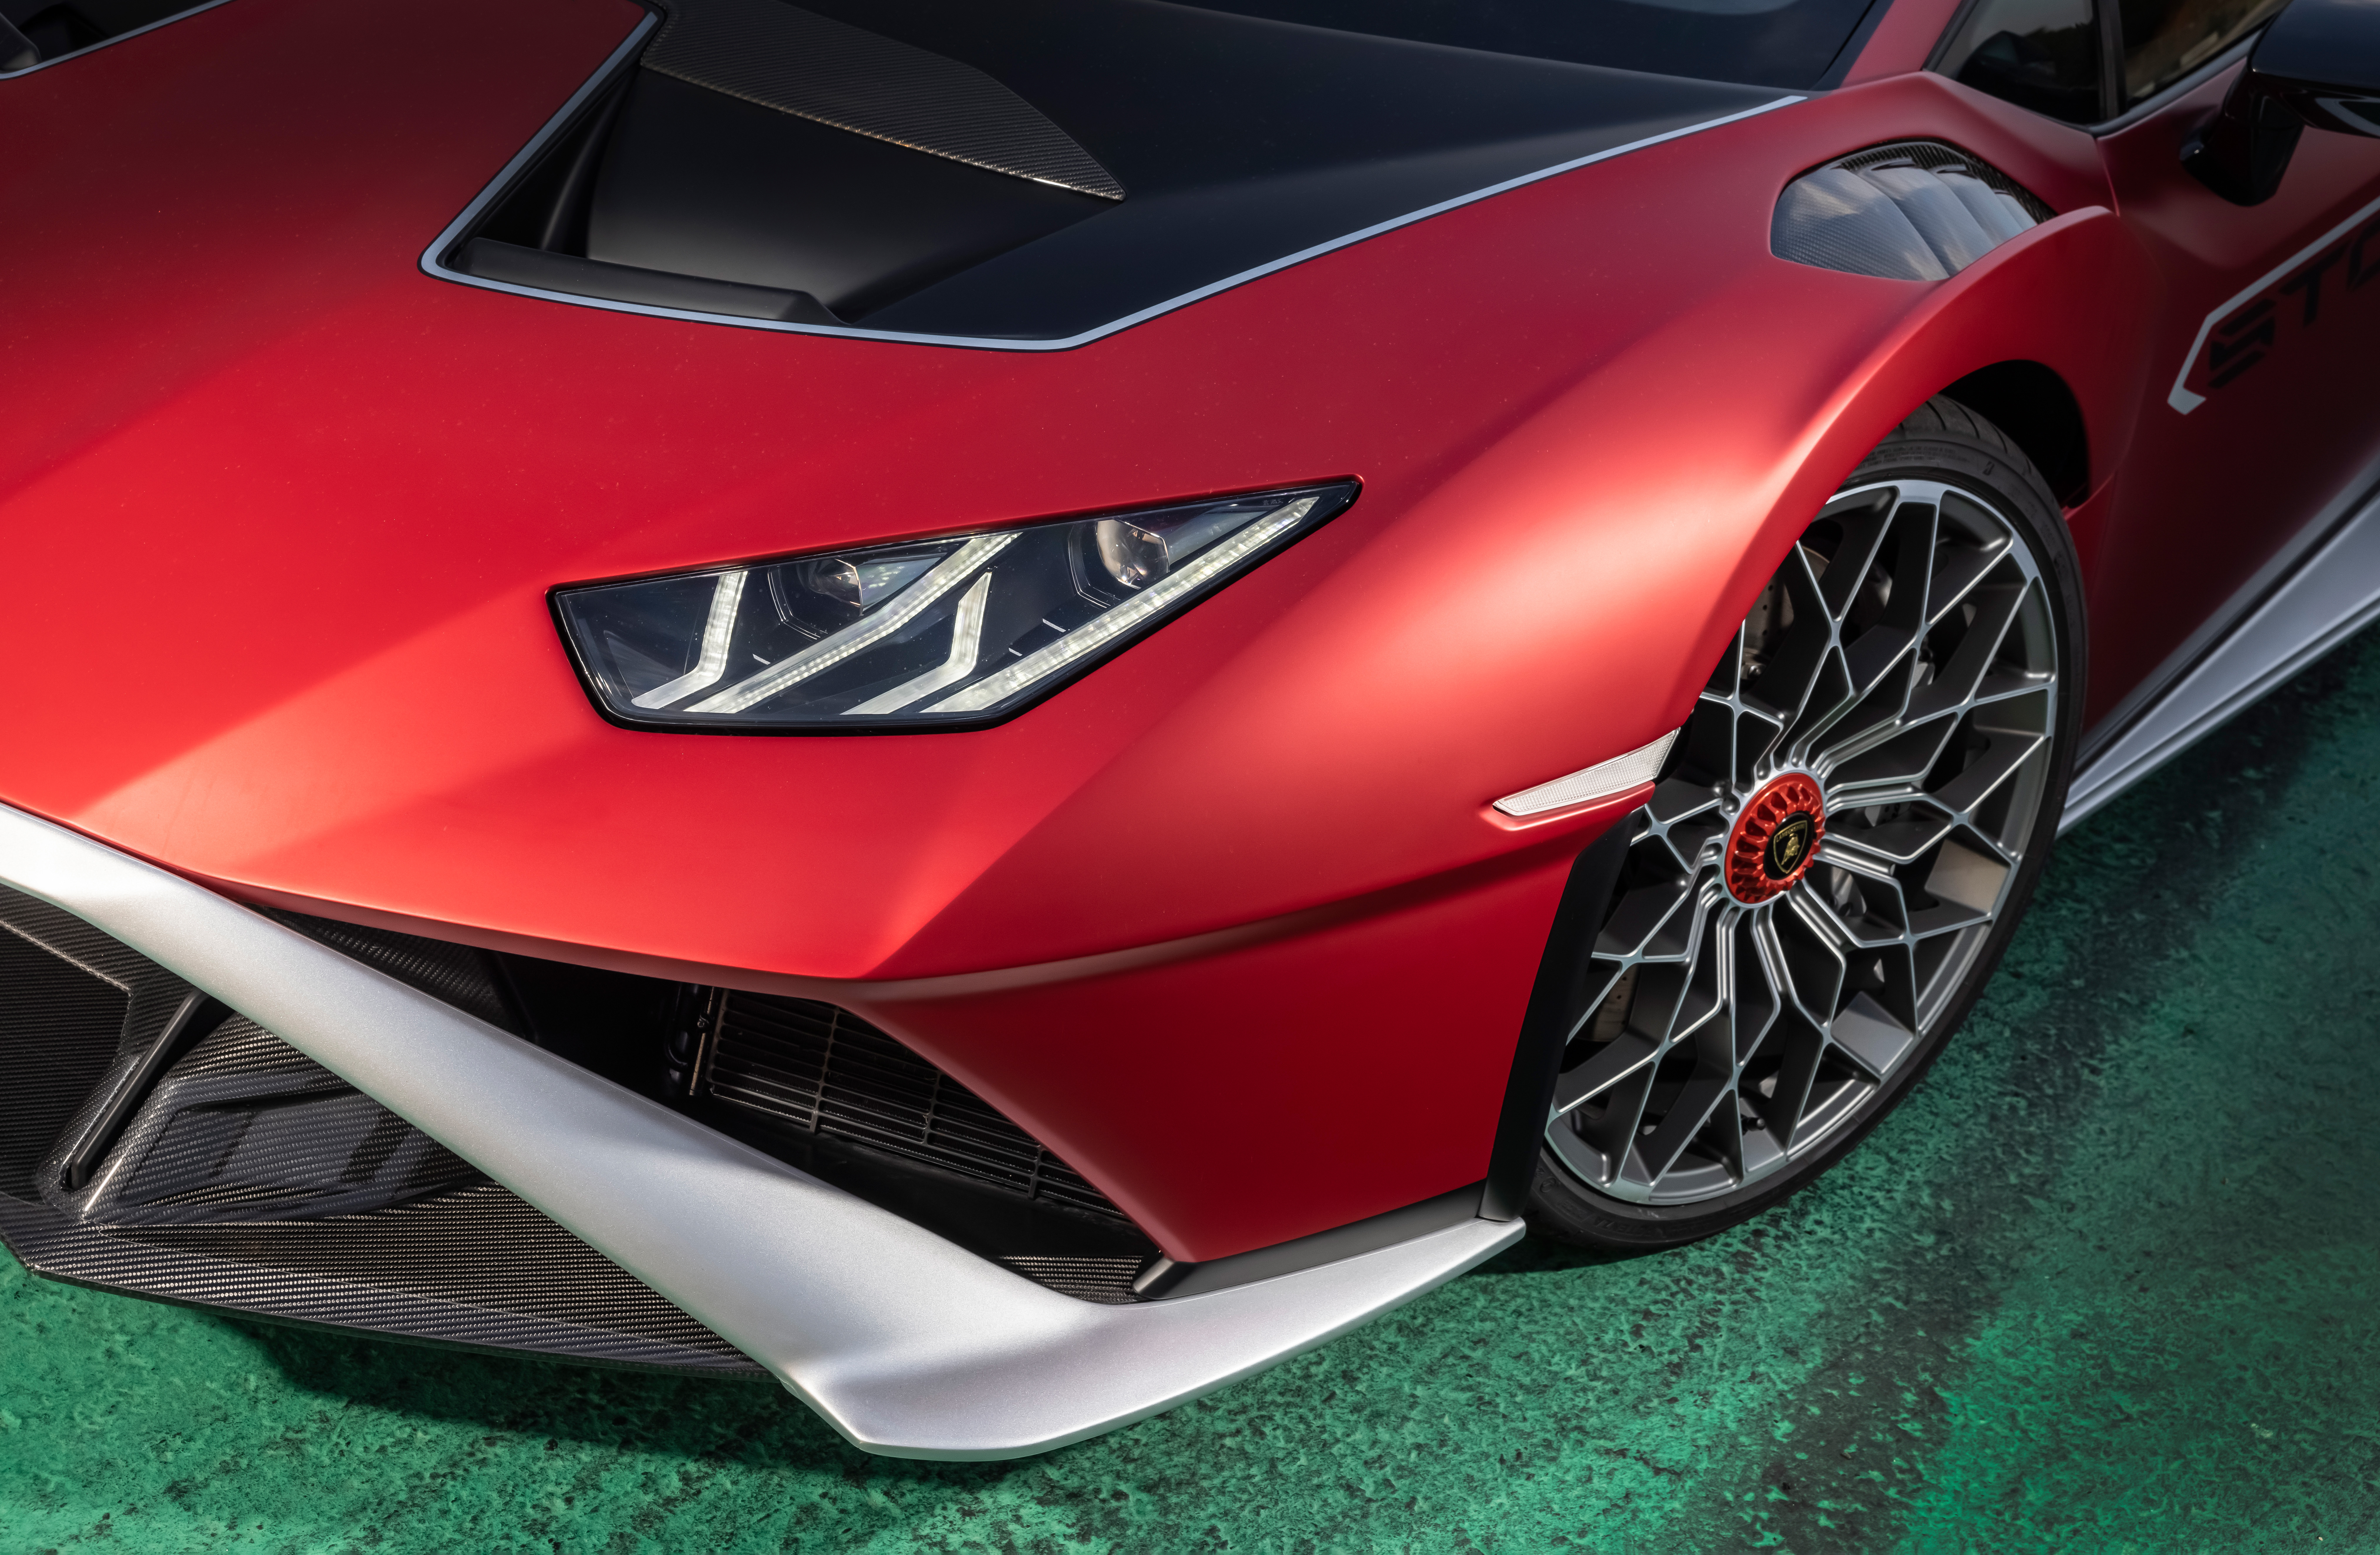 Free download wallpaper Lamborghini, Supercar, Vehicles, Lamborghini Huracán Sto on your PC desktop